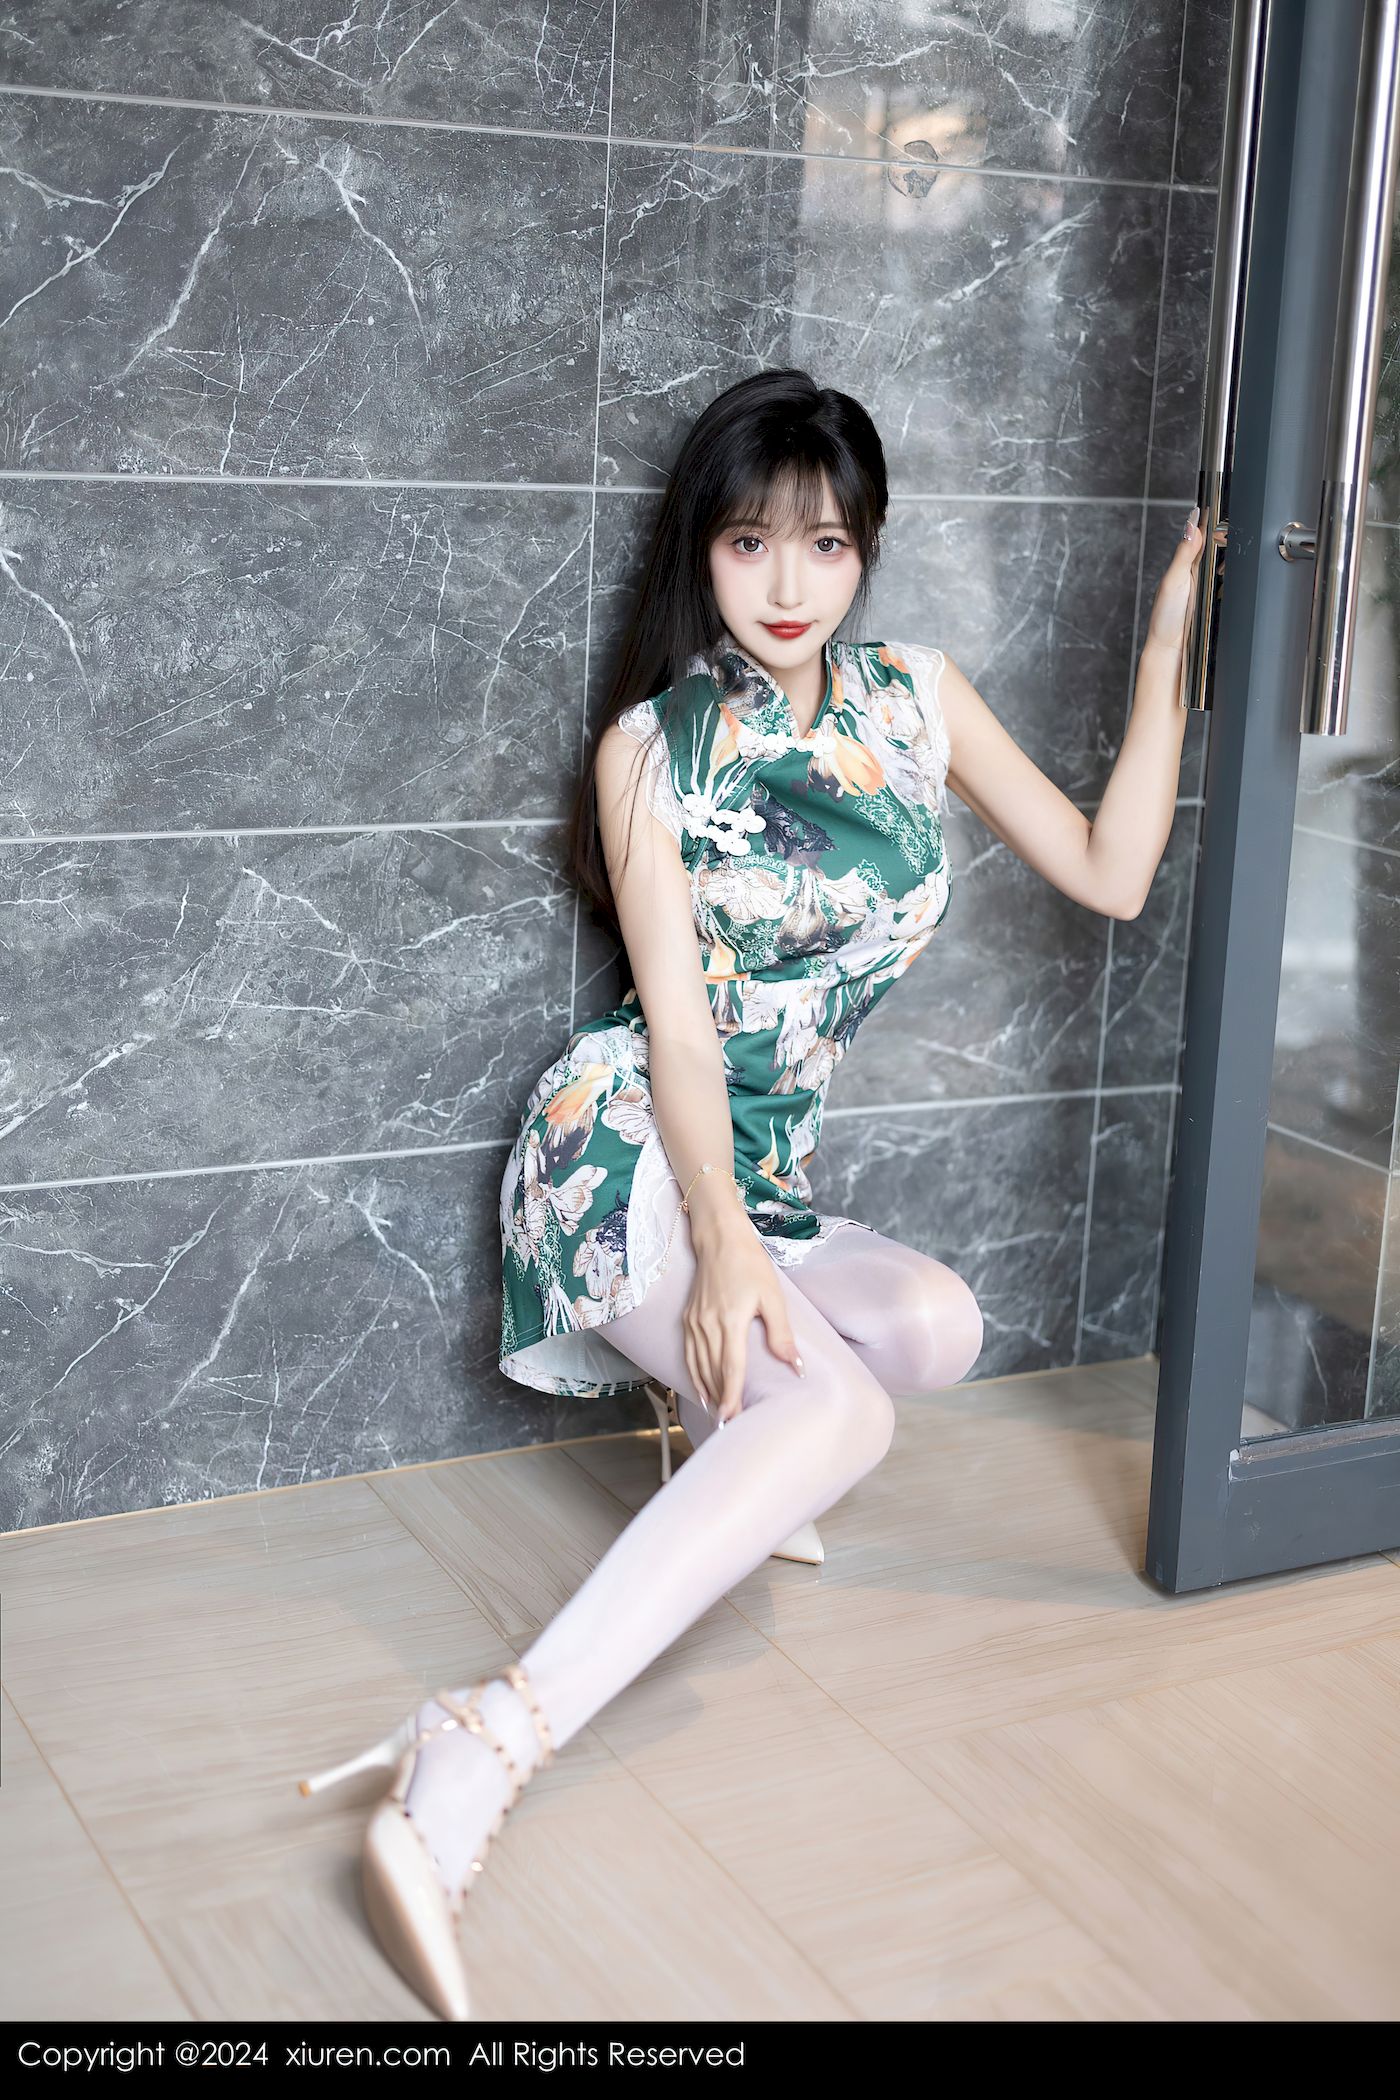 林星阑图案旗袍搭配白丝美腿性感写真